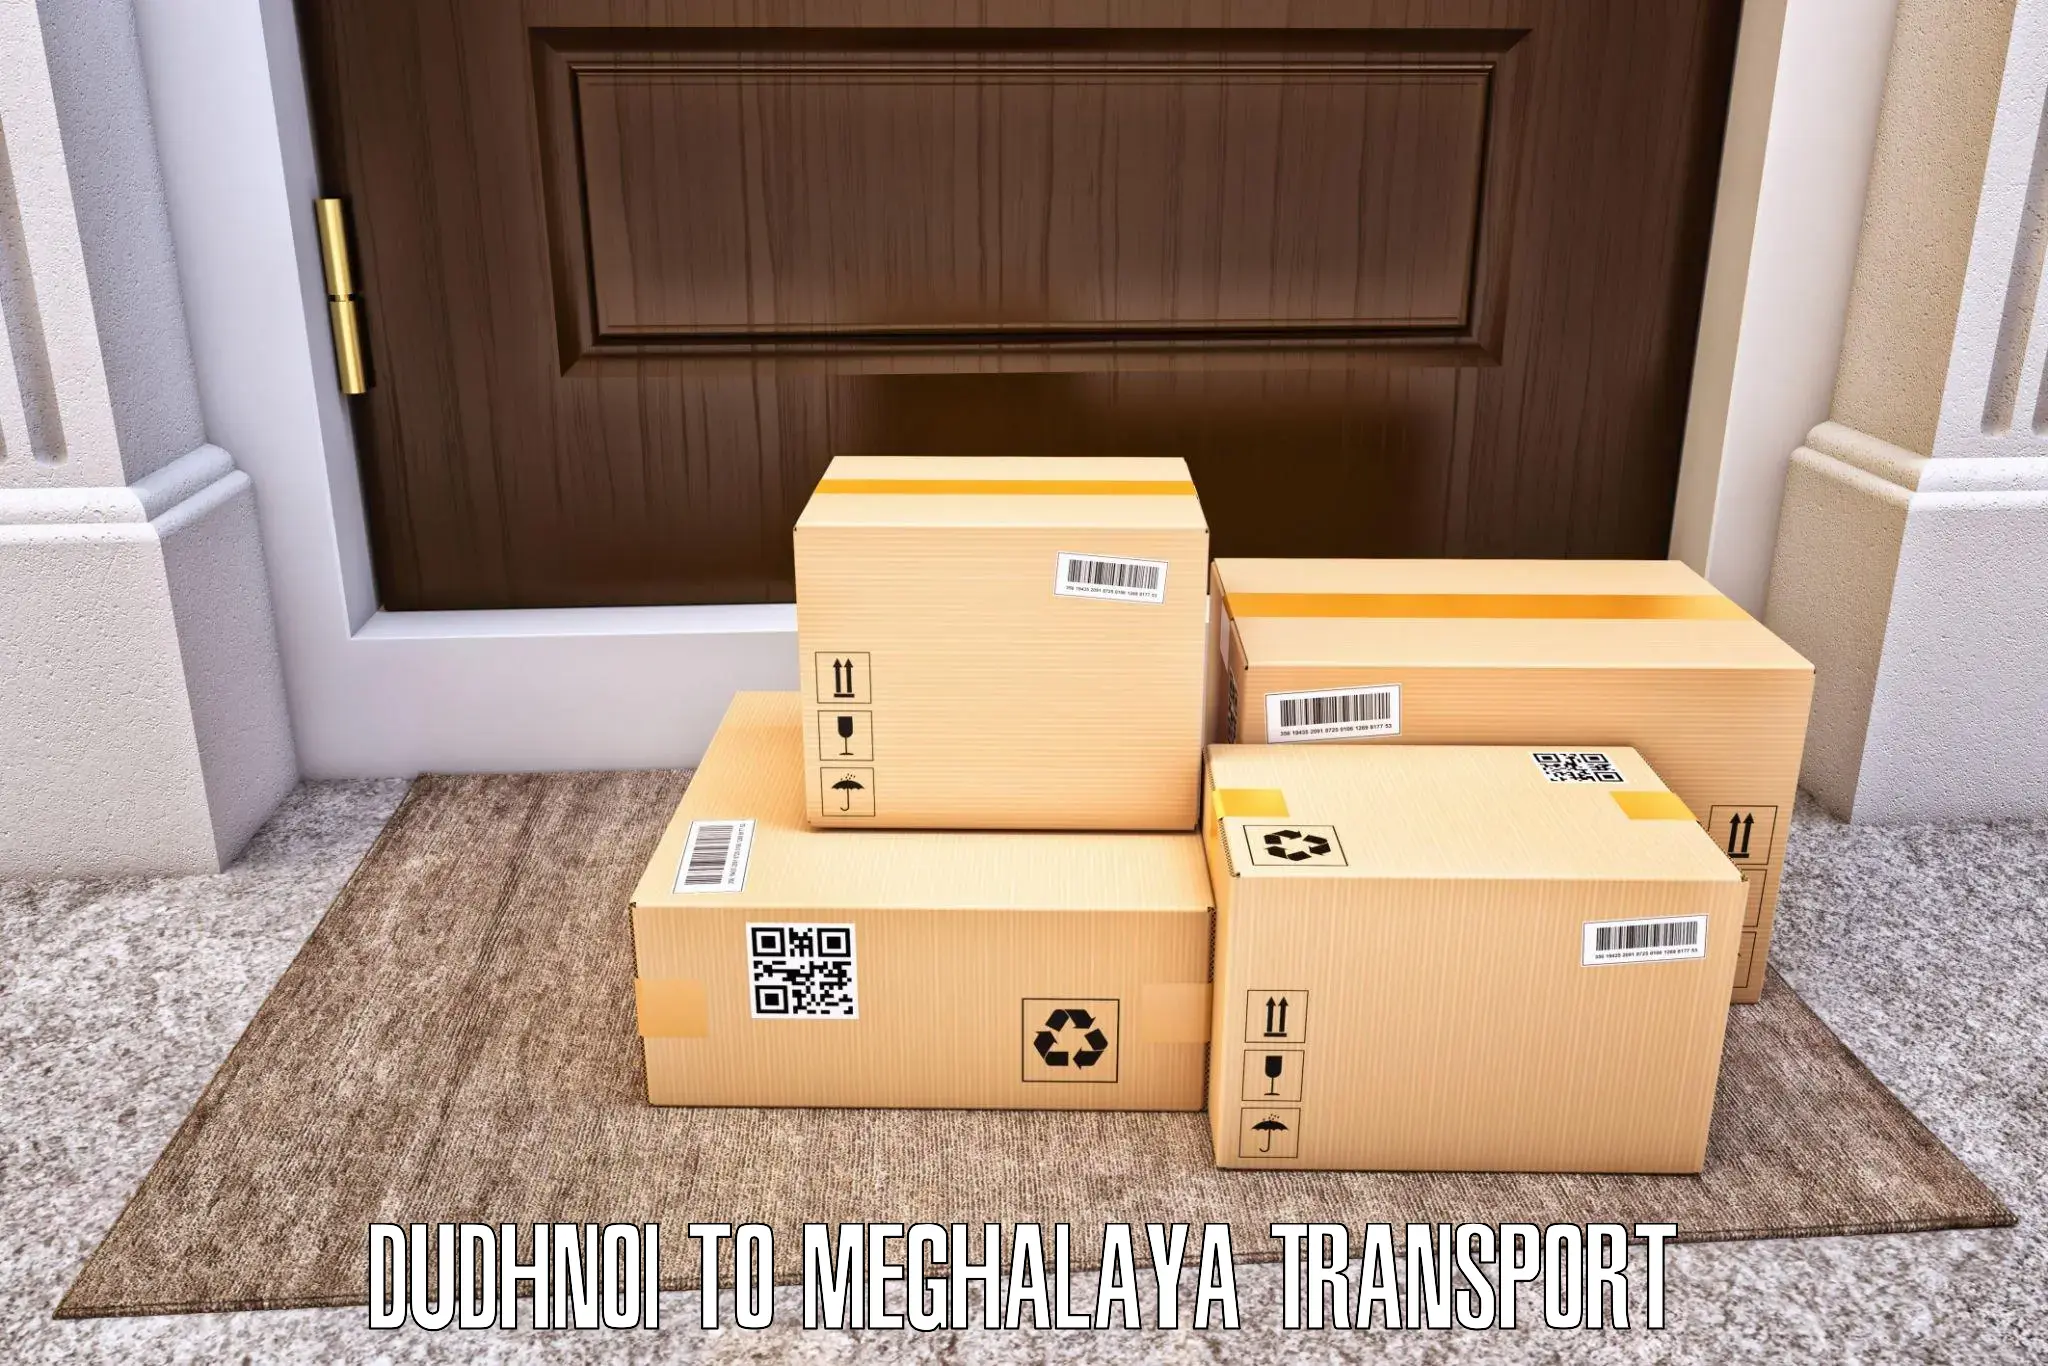 Shipping services Dudhnoi to Phulbari